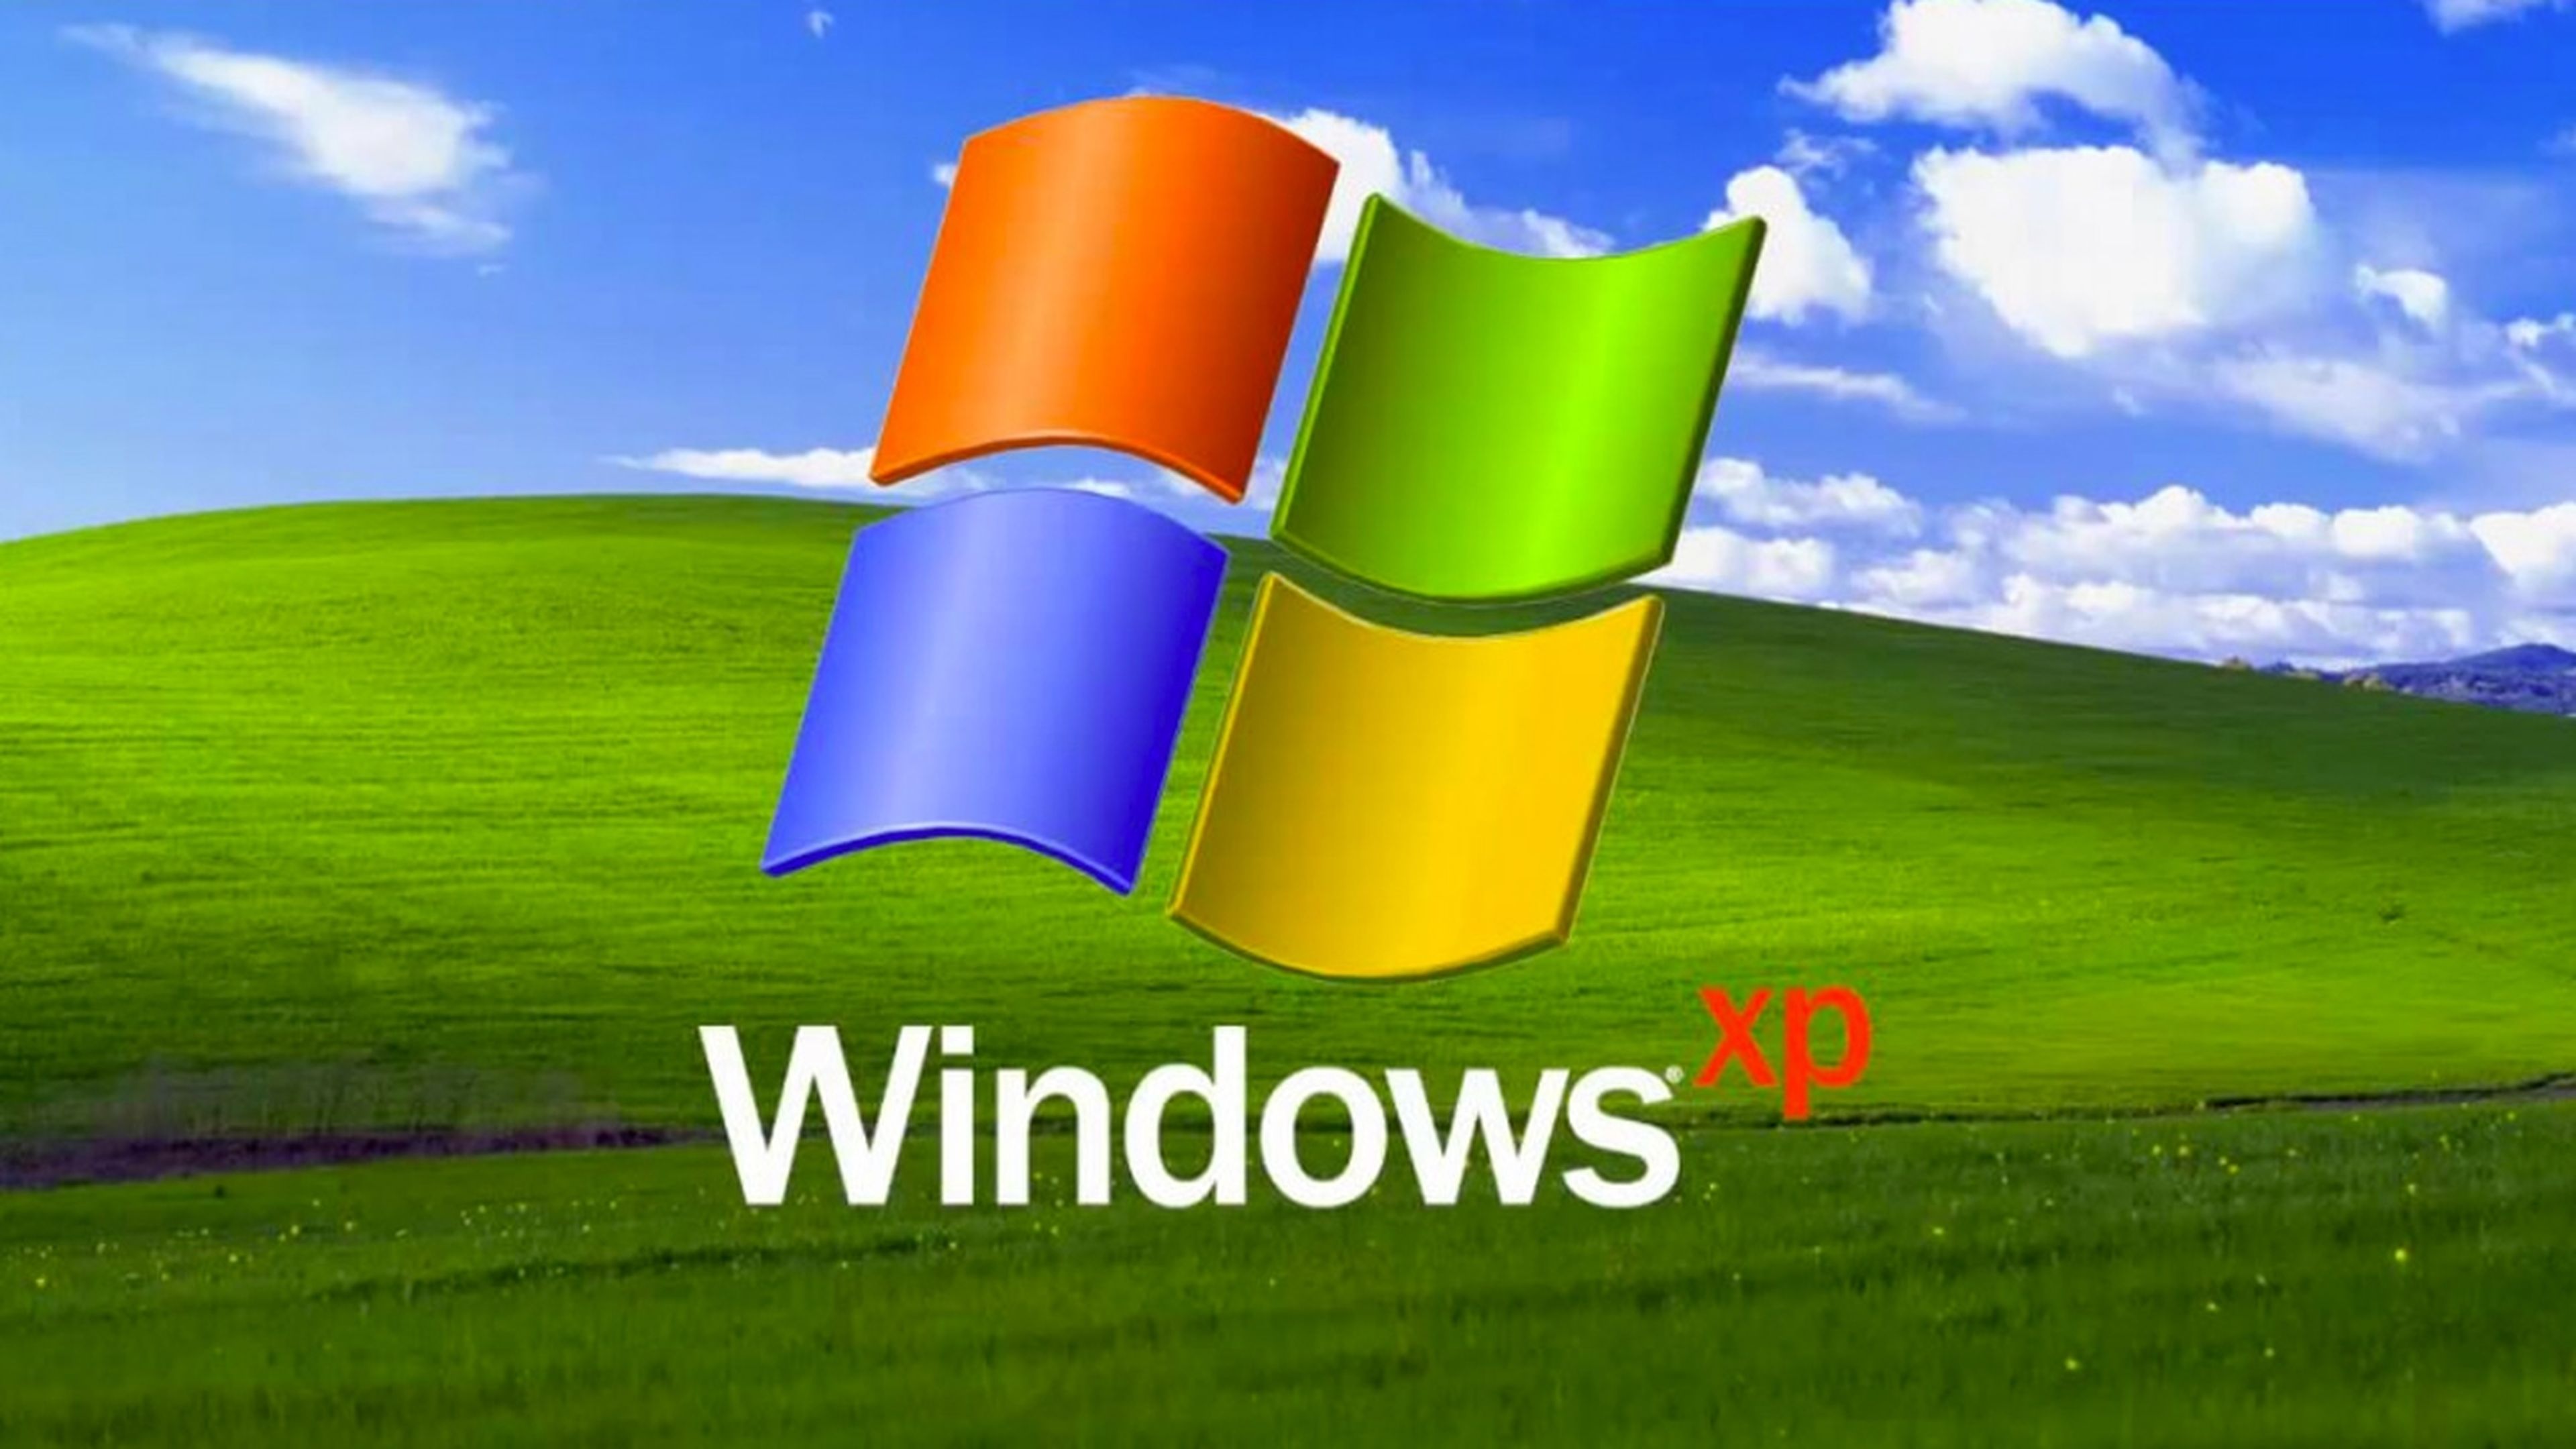 Consiguen compilar el código fuente de Windows XP que se filtró en 4Chan